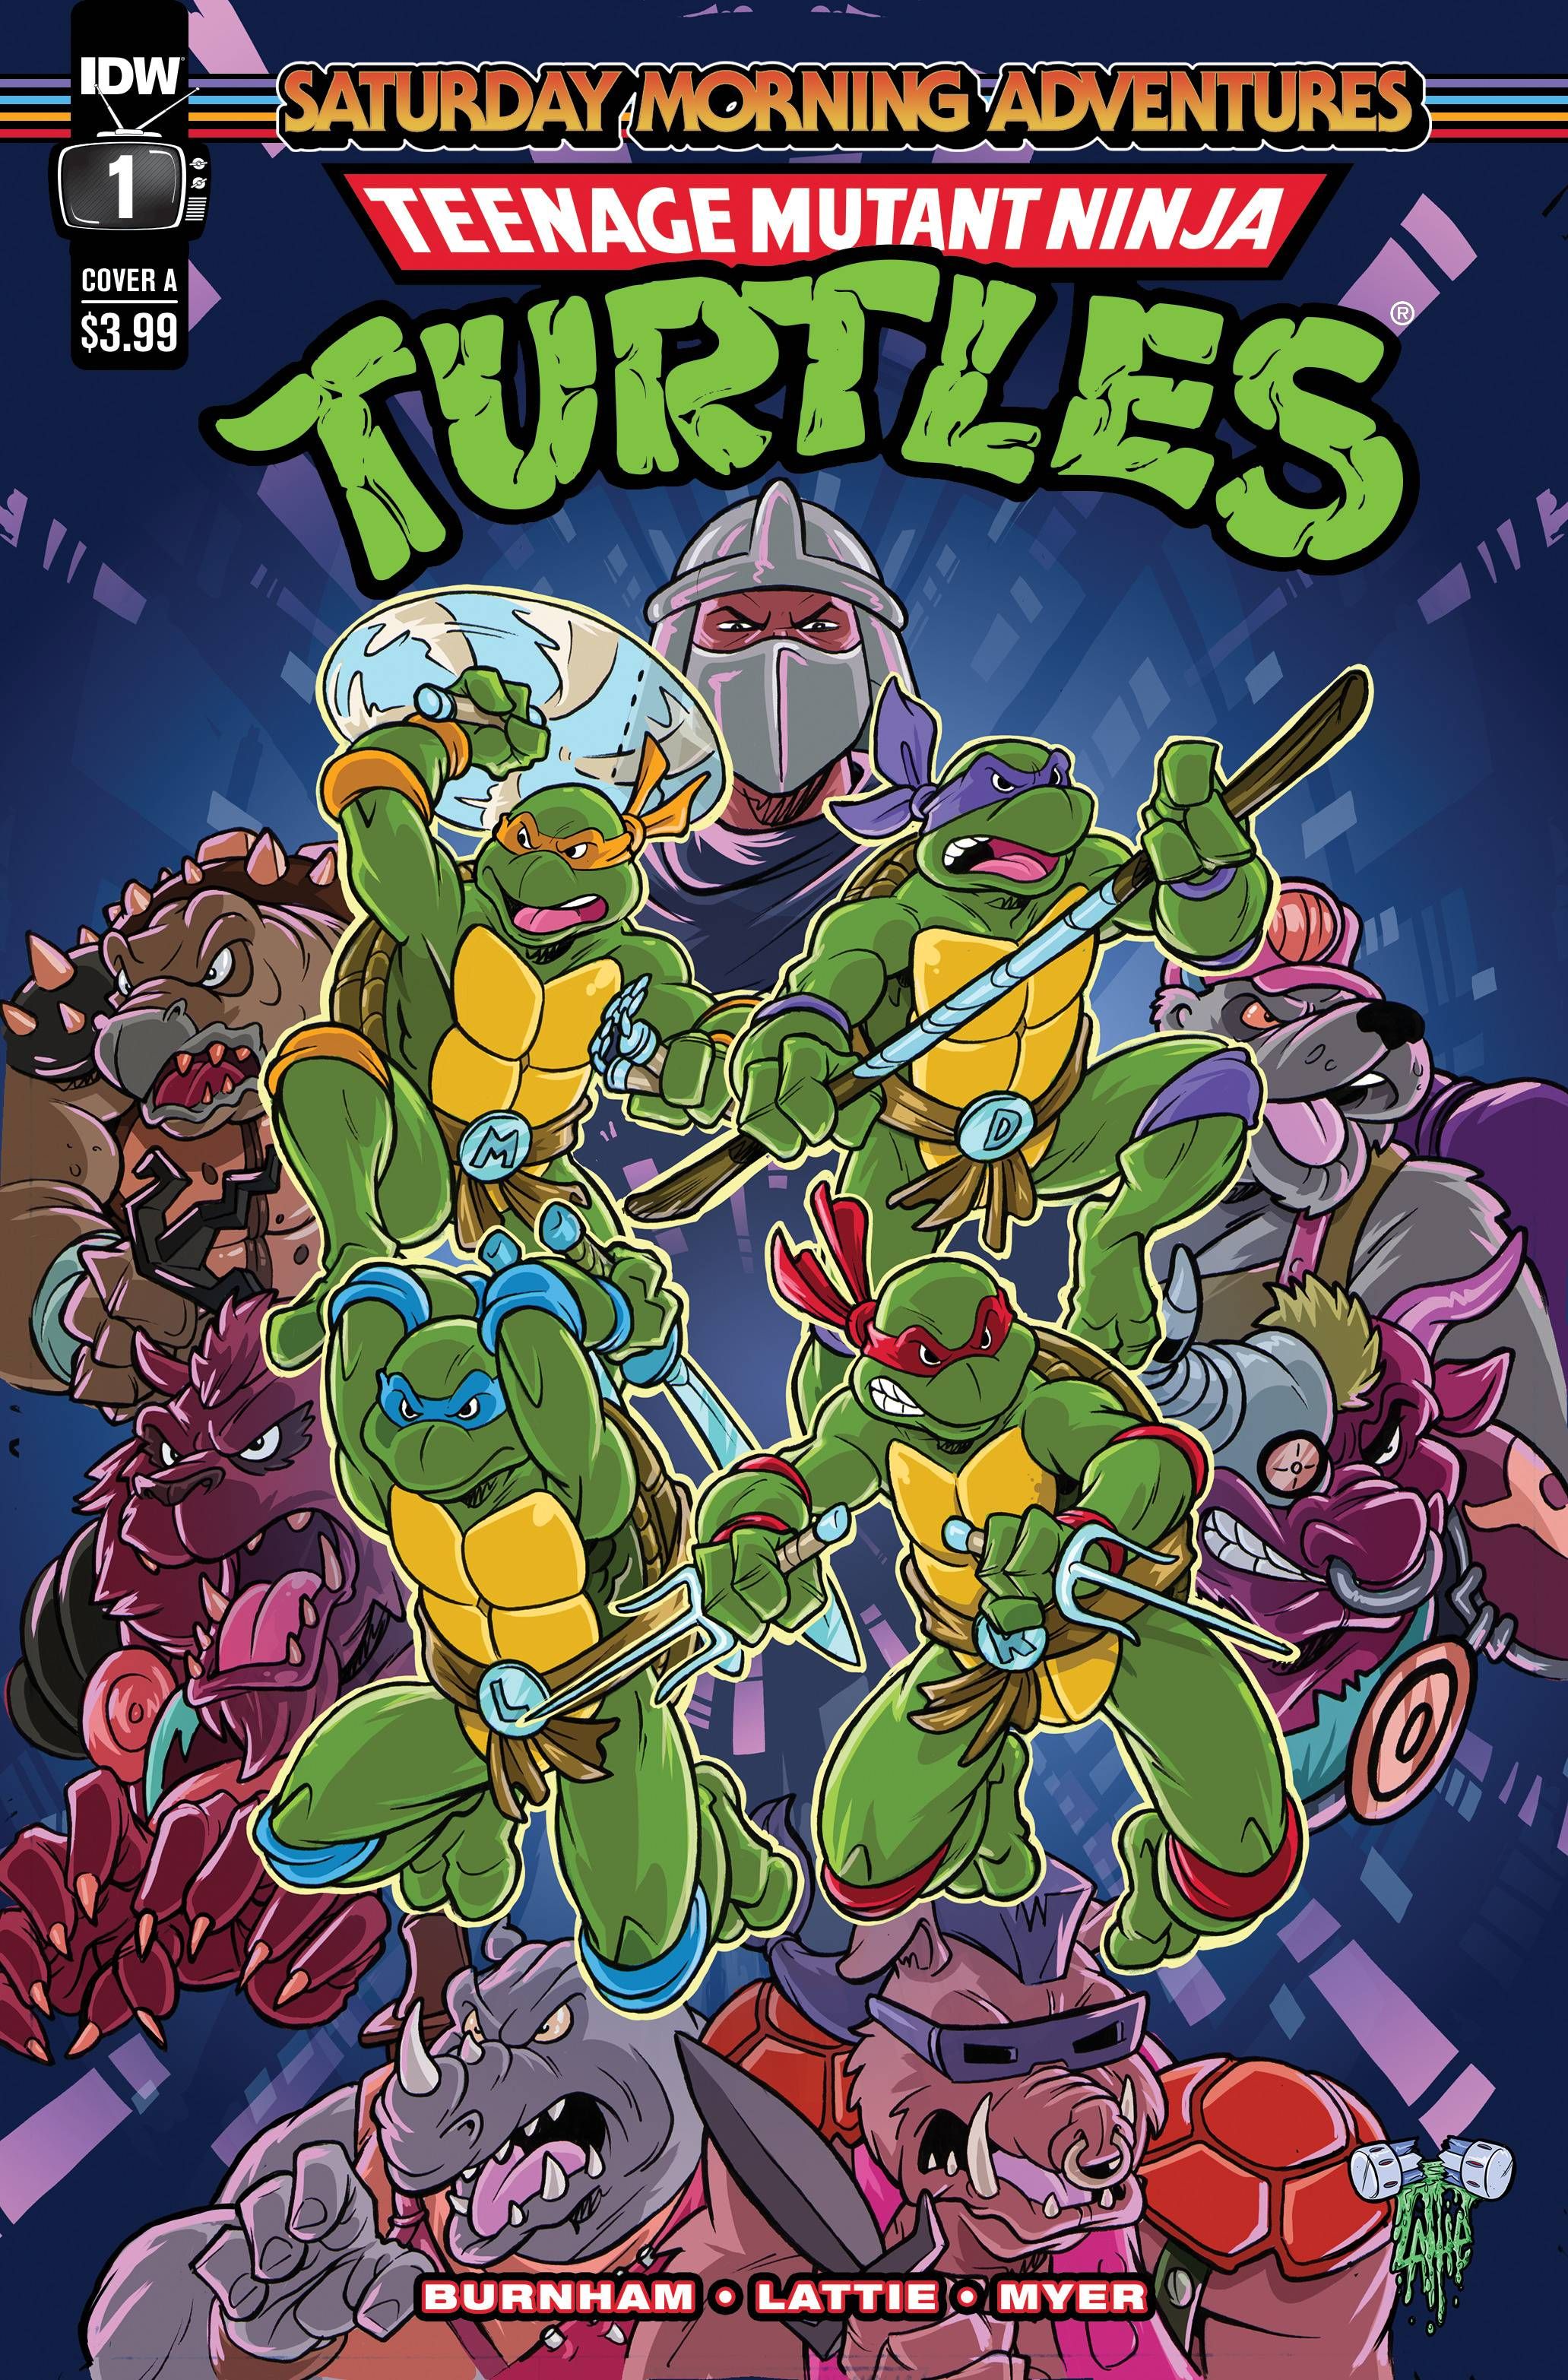 Teenage Mutant Ninja Turtles: Saturday Morning Adventures #1 Comic